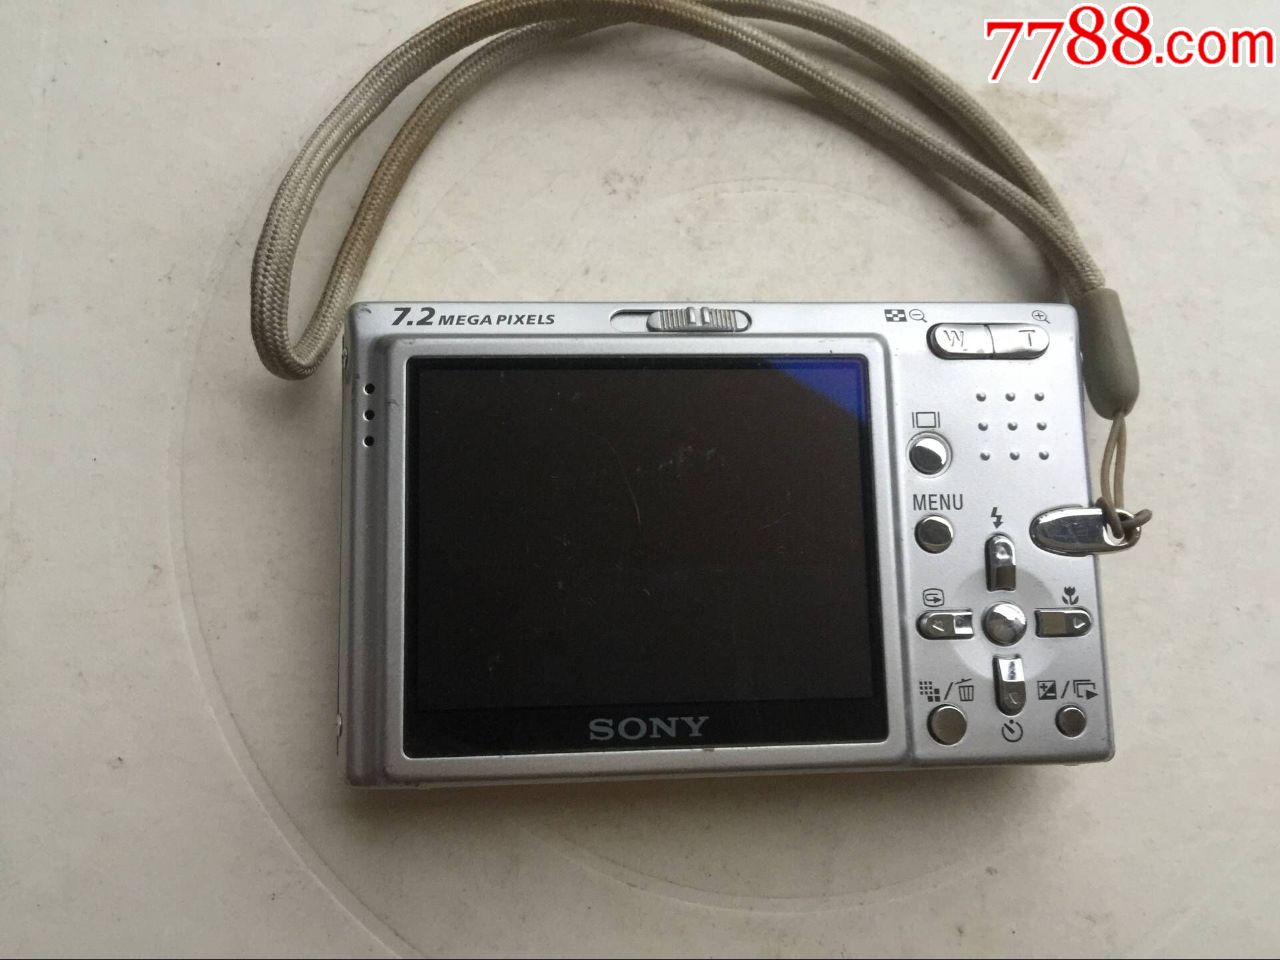 索尼相机-价格:8.0000元-au19480482-卡片机/数码相机